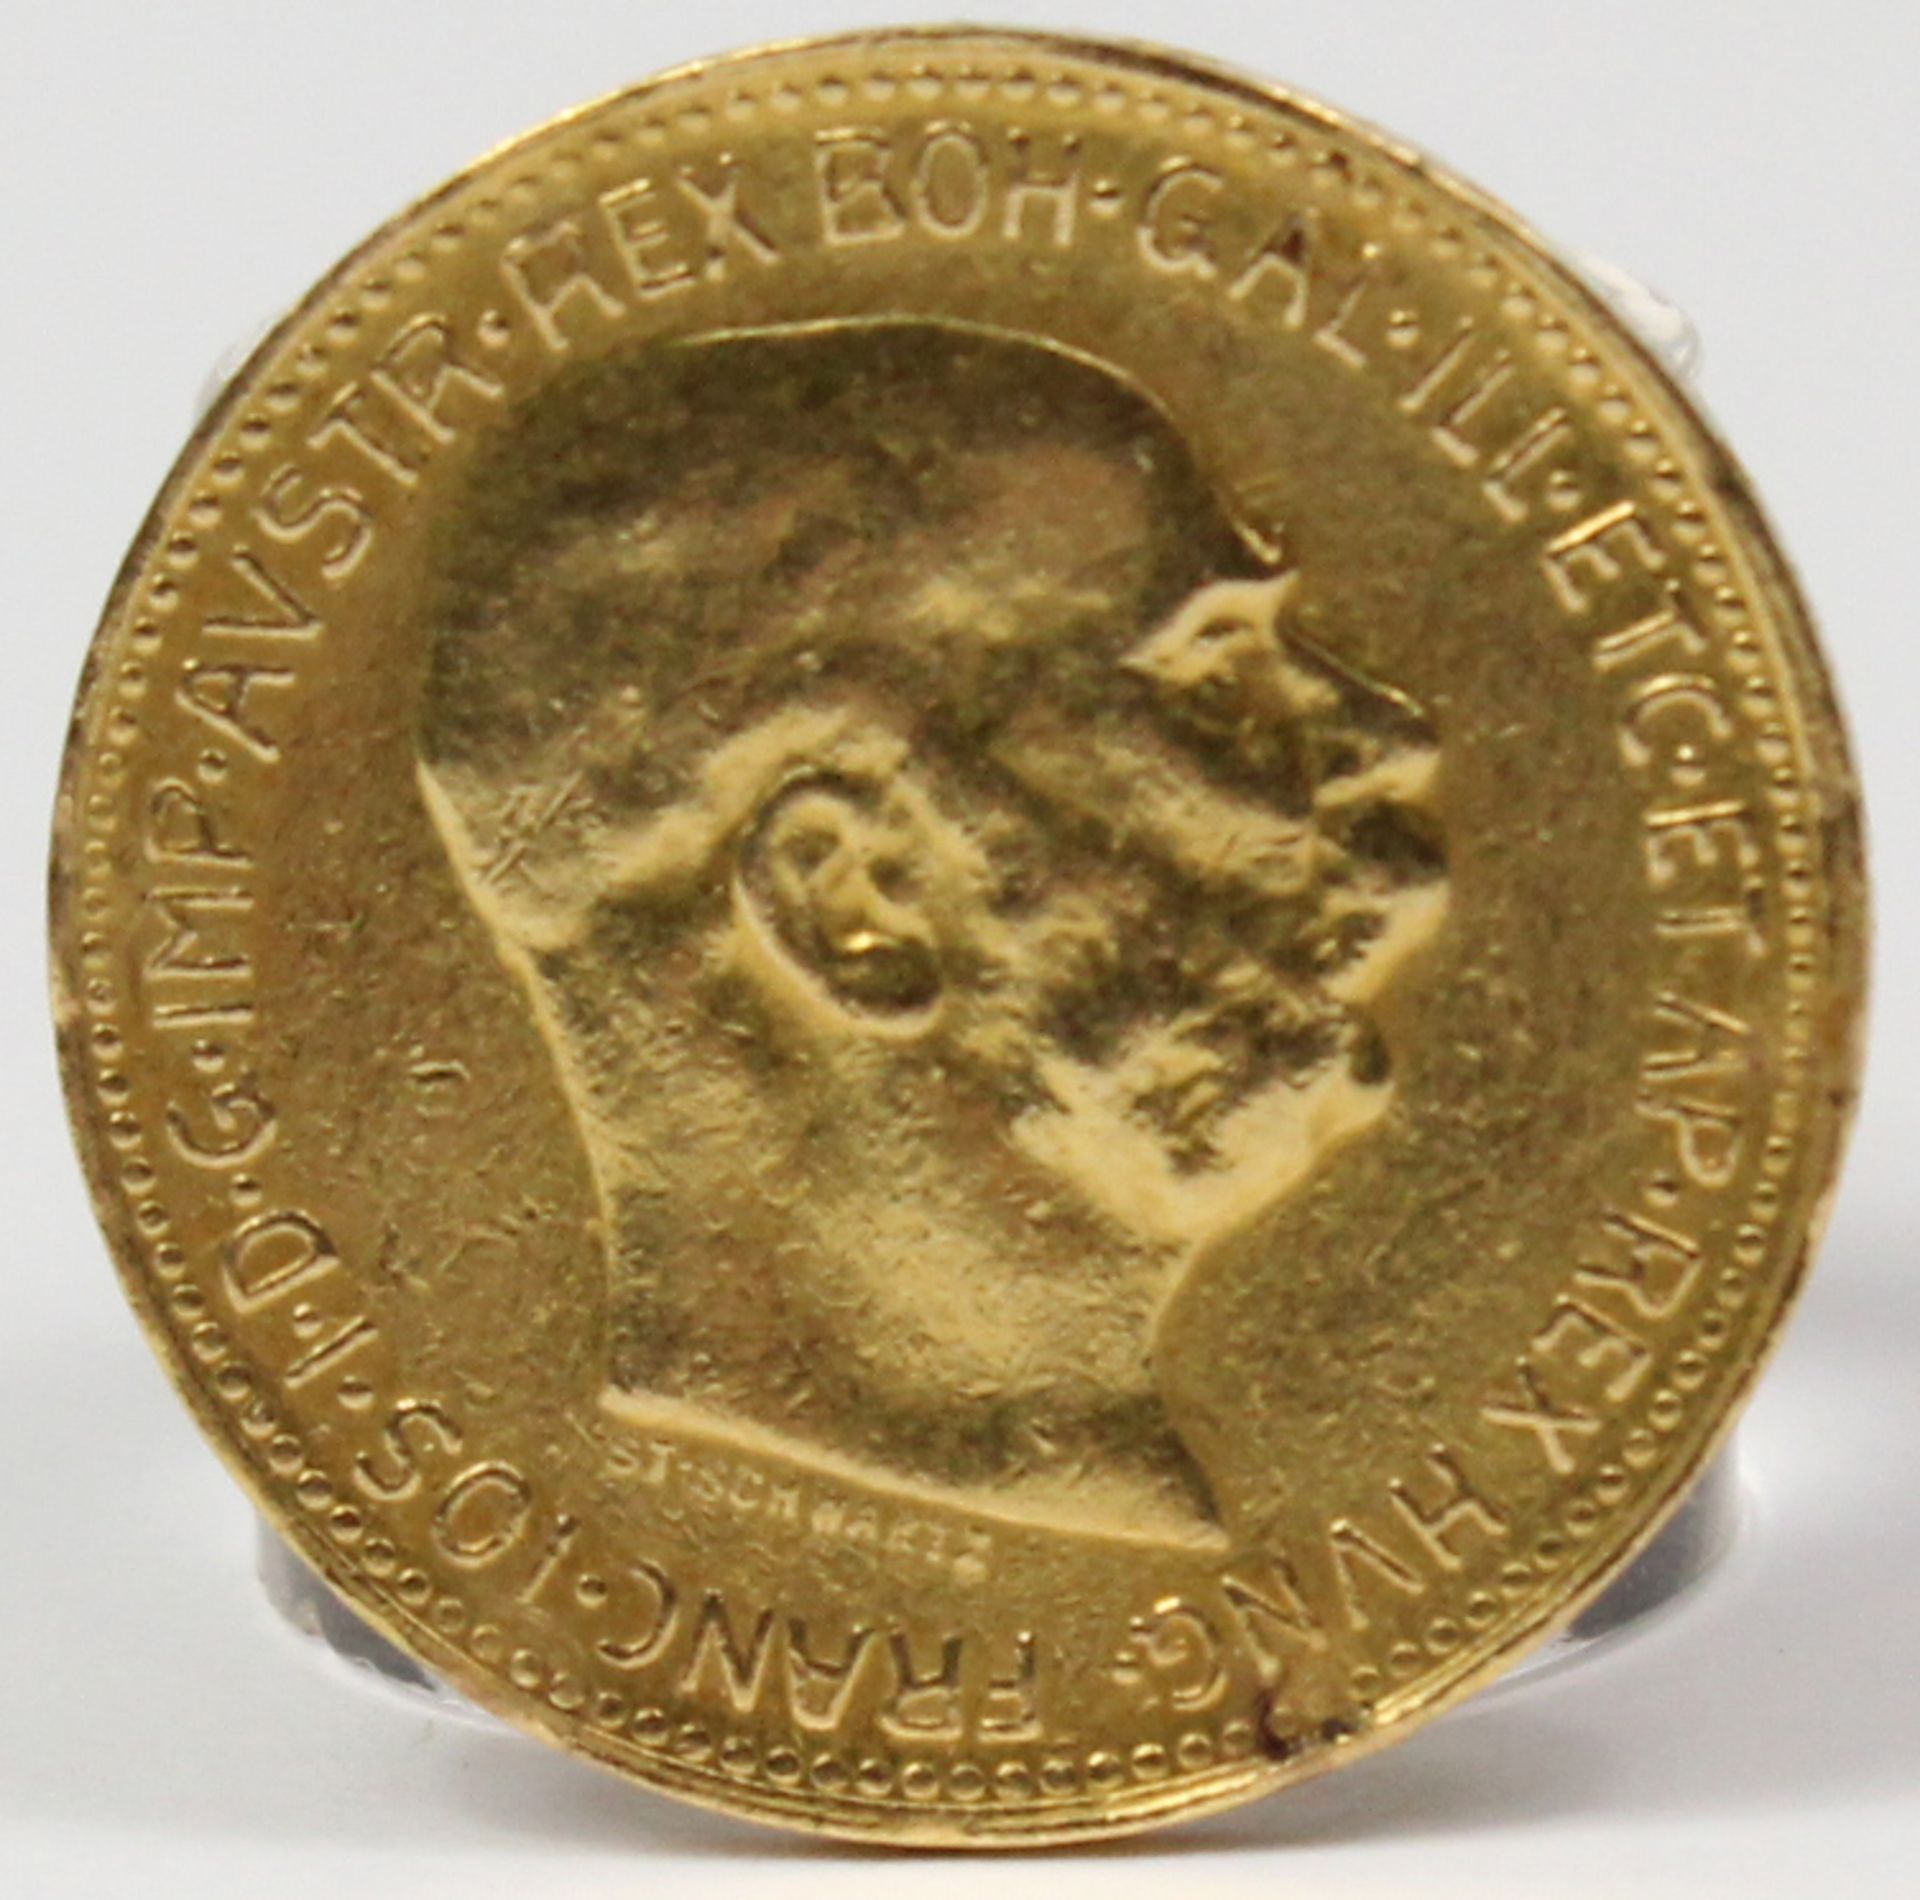 Goldmünze. 20 Kronen. Österreich. Kaiser Franz Joseph. 1915.